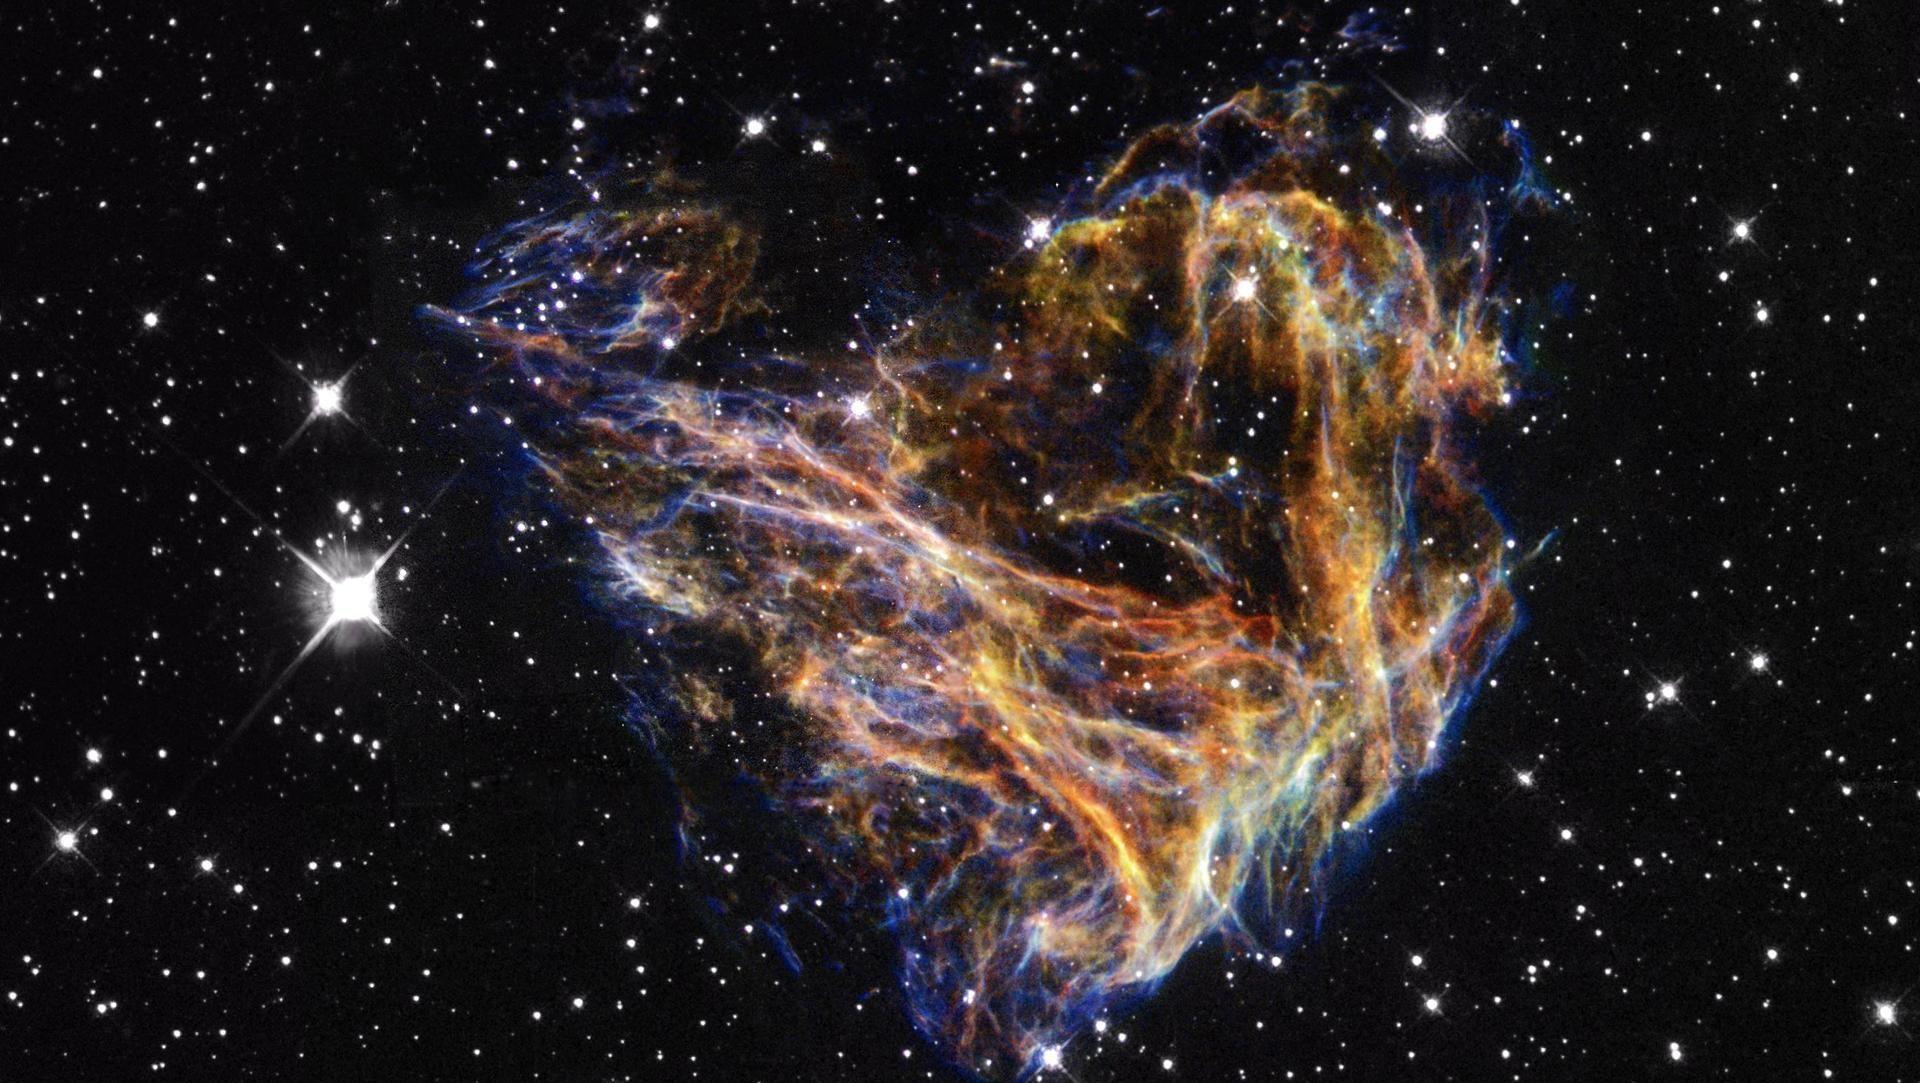 Hubble Ultra Deep Field Wallpapers - Top Free Hubble Ultra Deep Field